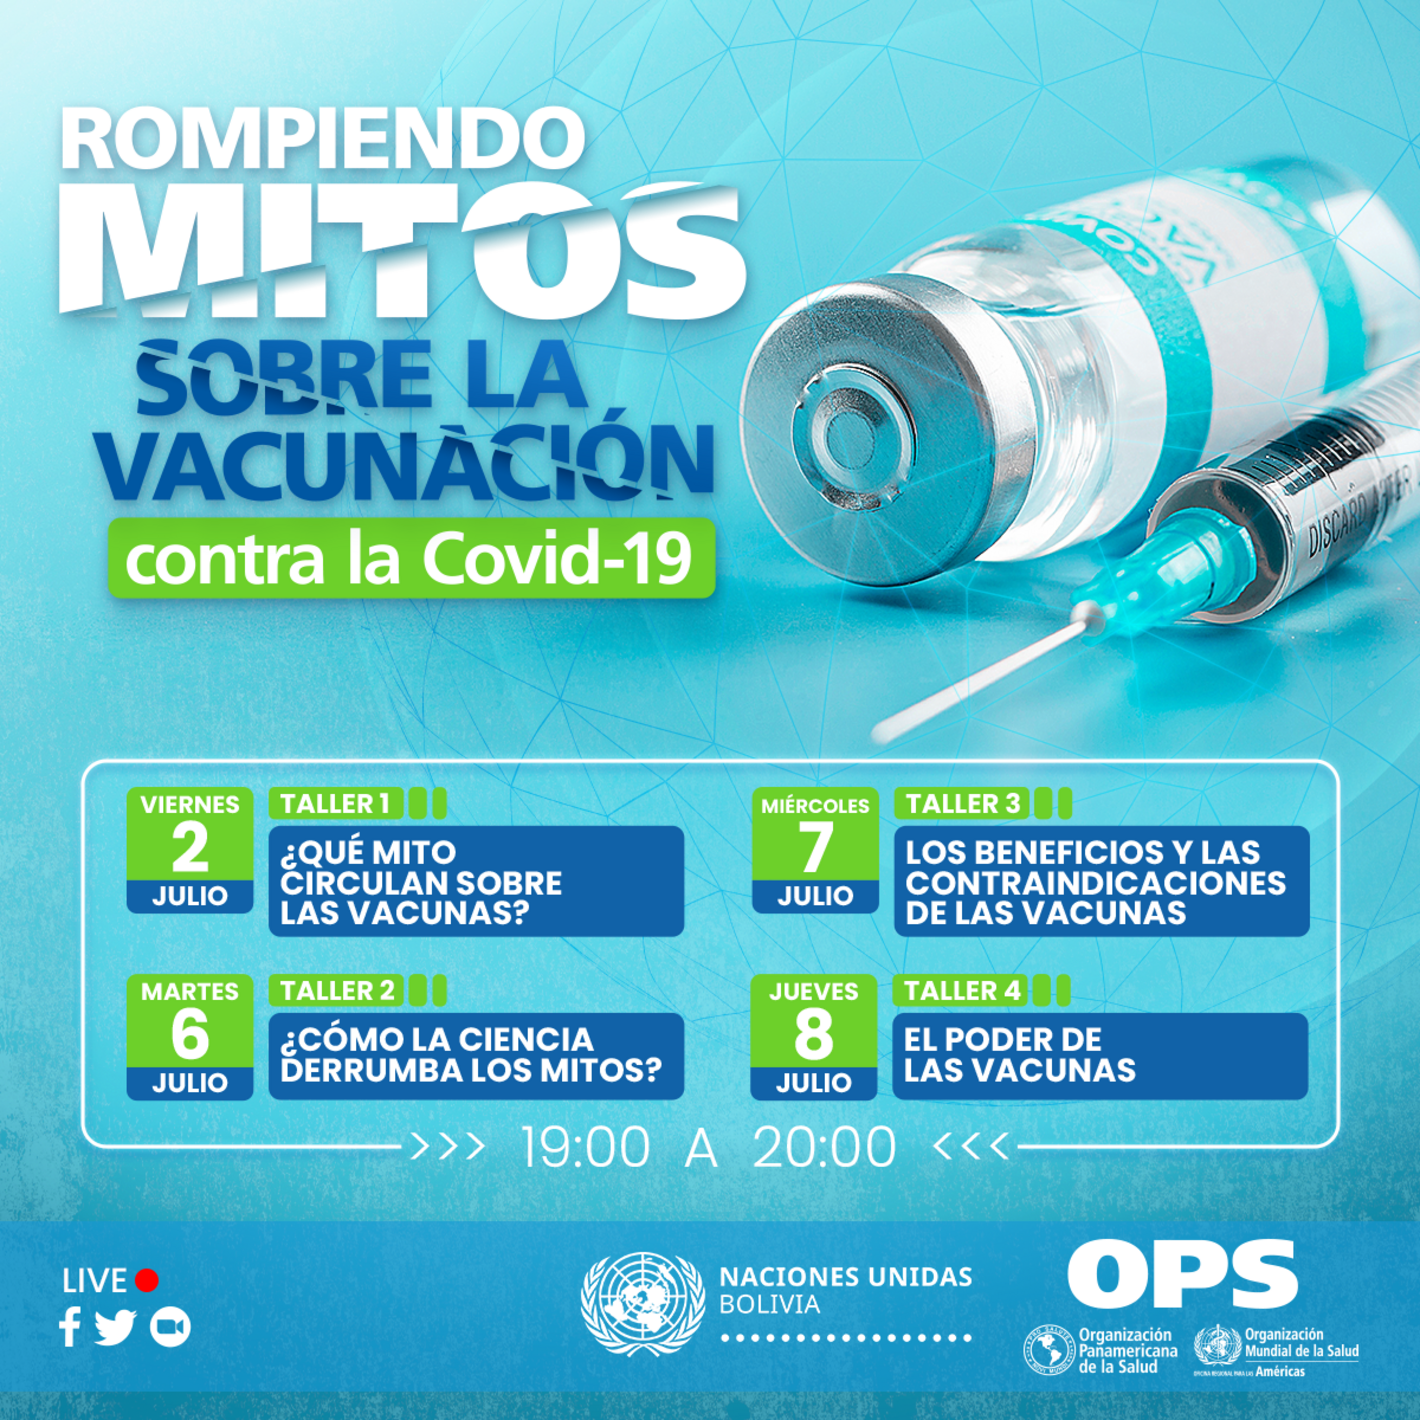 Vacunacion Covid-19